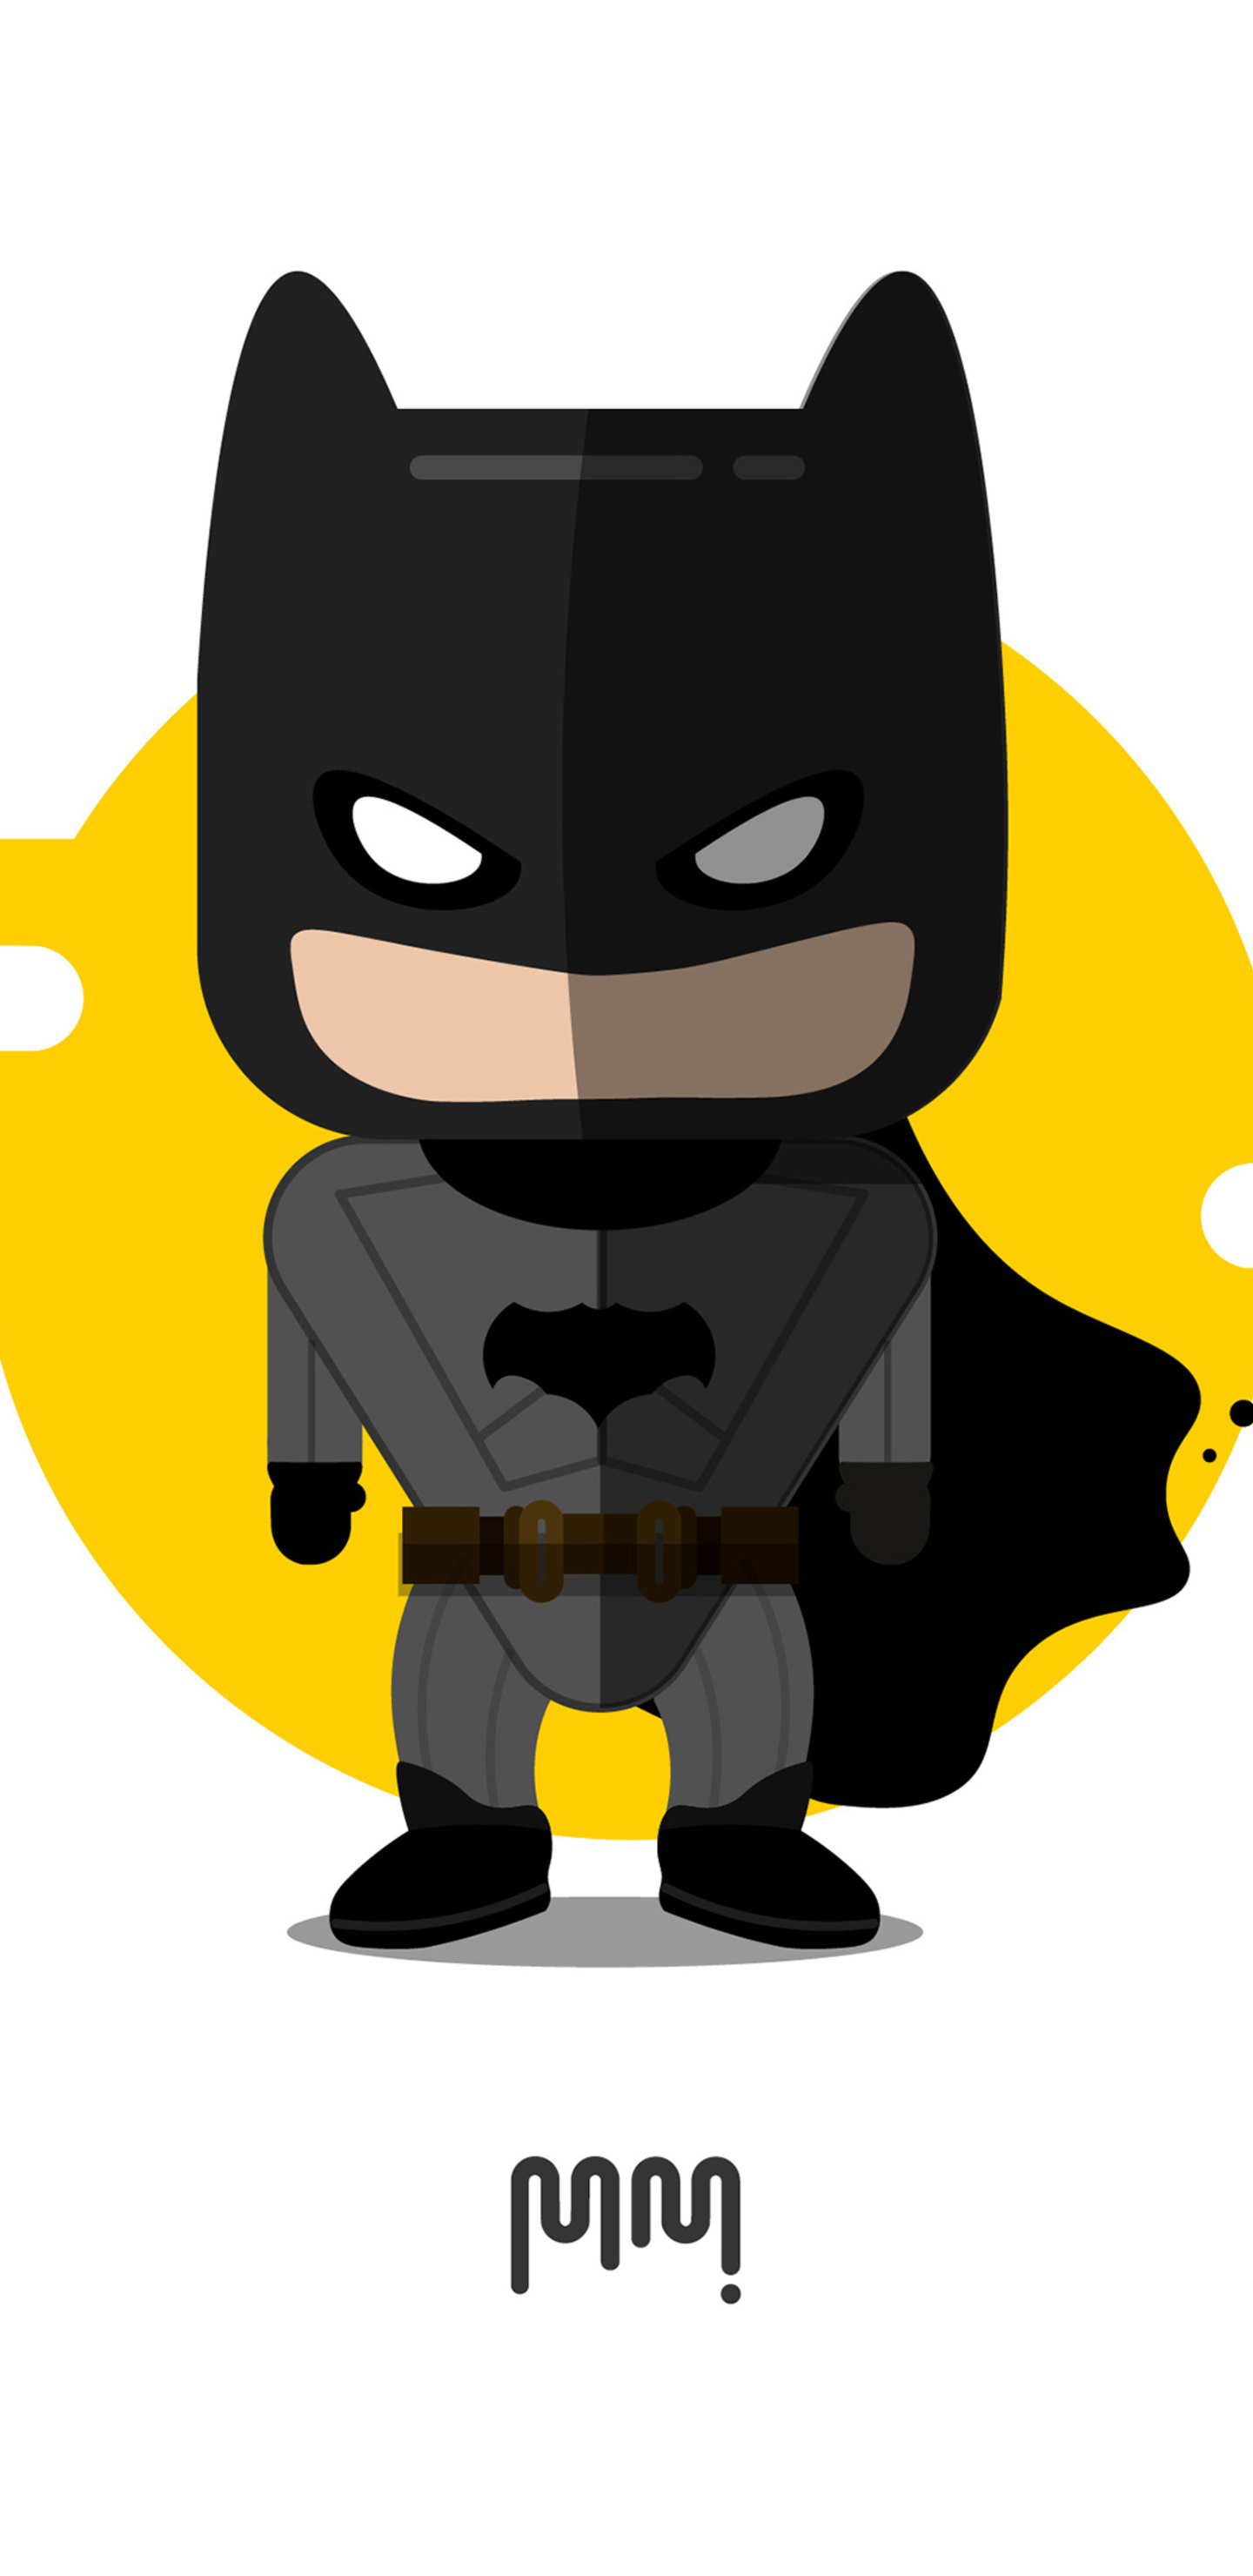 Hình nền Batman không chỉ là một lựa chọn tuyệt vời cho các fan của đại úy Gotham mà còn là một cách để thể hiện sự mạnh mẽ và thủ lĩnh của bạn. Với hình ảnh đầy uy lực và bí ẩn của nhân vật, hình nền này sẽ khiến bạn cảm thấy tự tin và mạnh mẽ trên màn hình điện thoại của mình. Hãy tải về và cảm nhận sức mạnh của Batman ngay hôm nay!